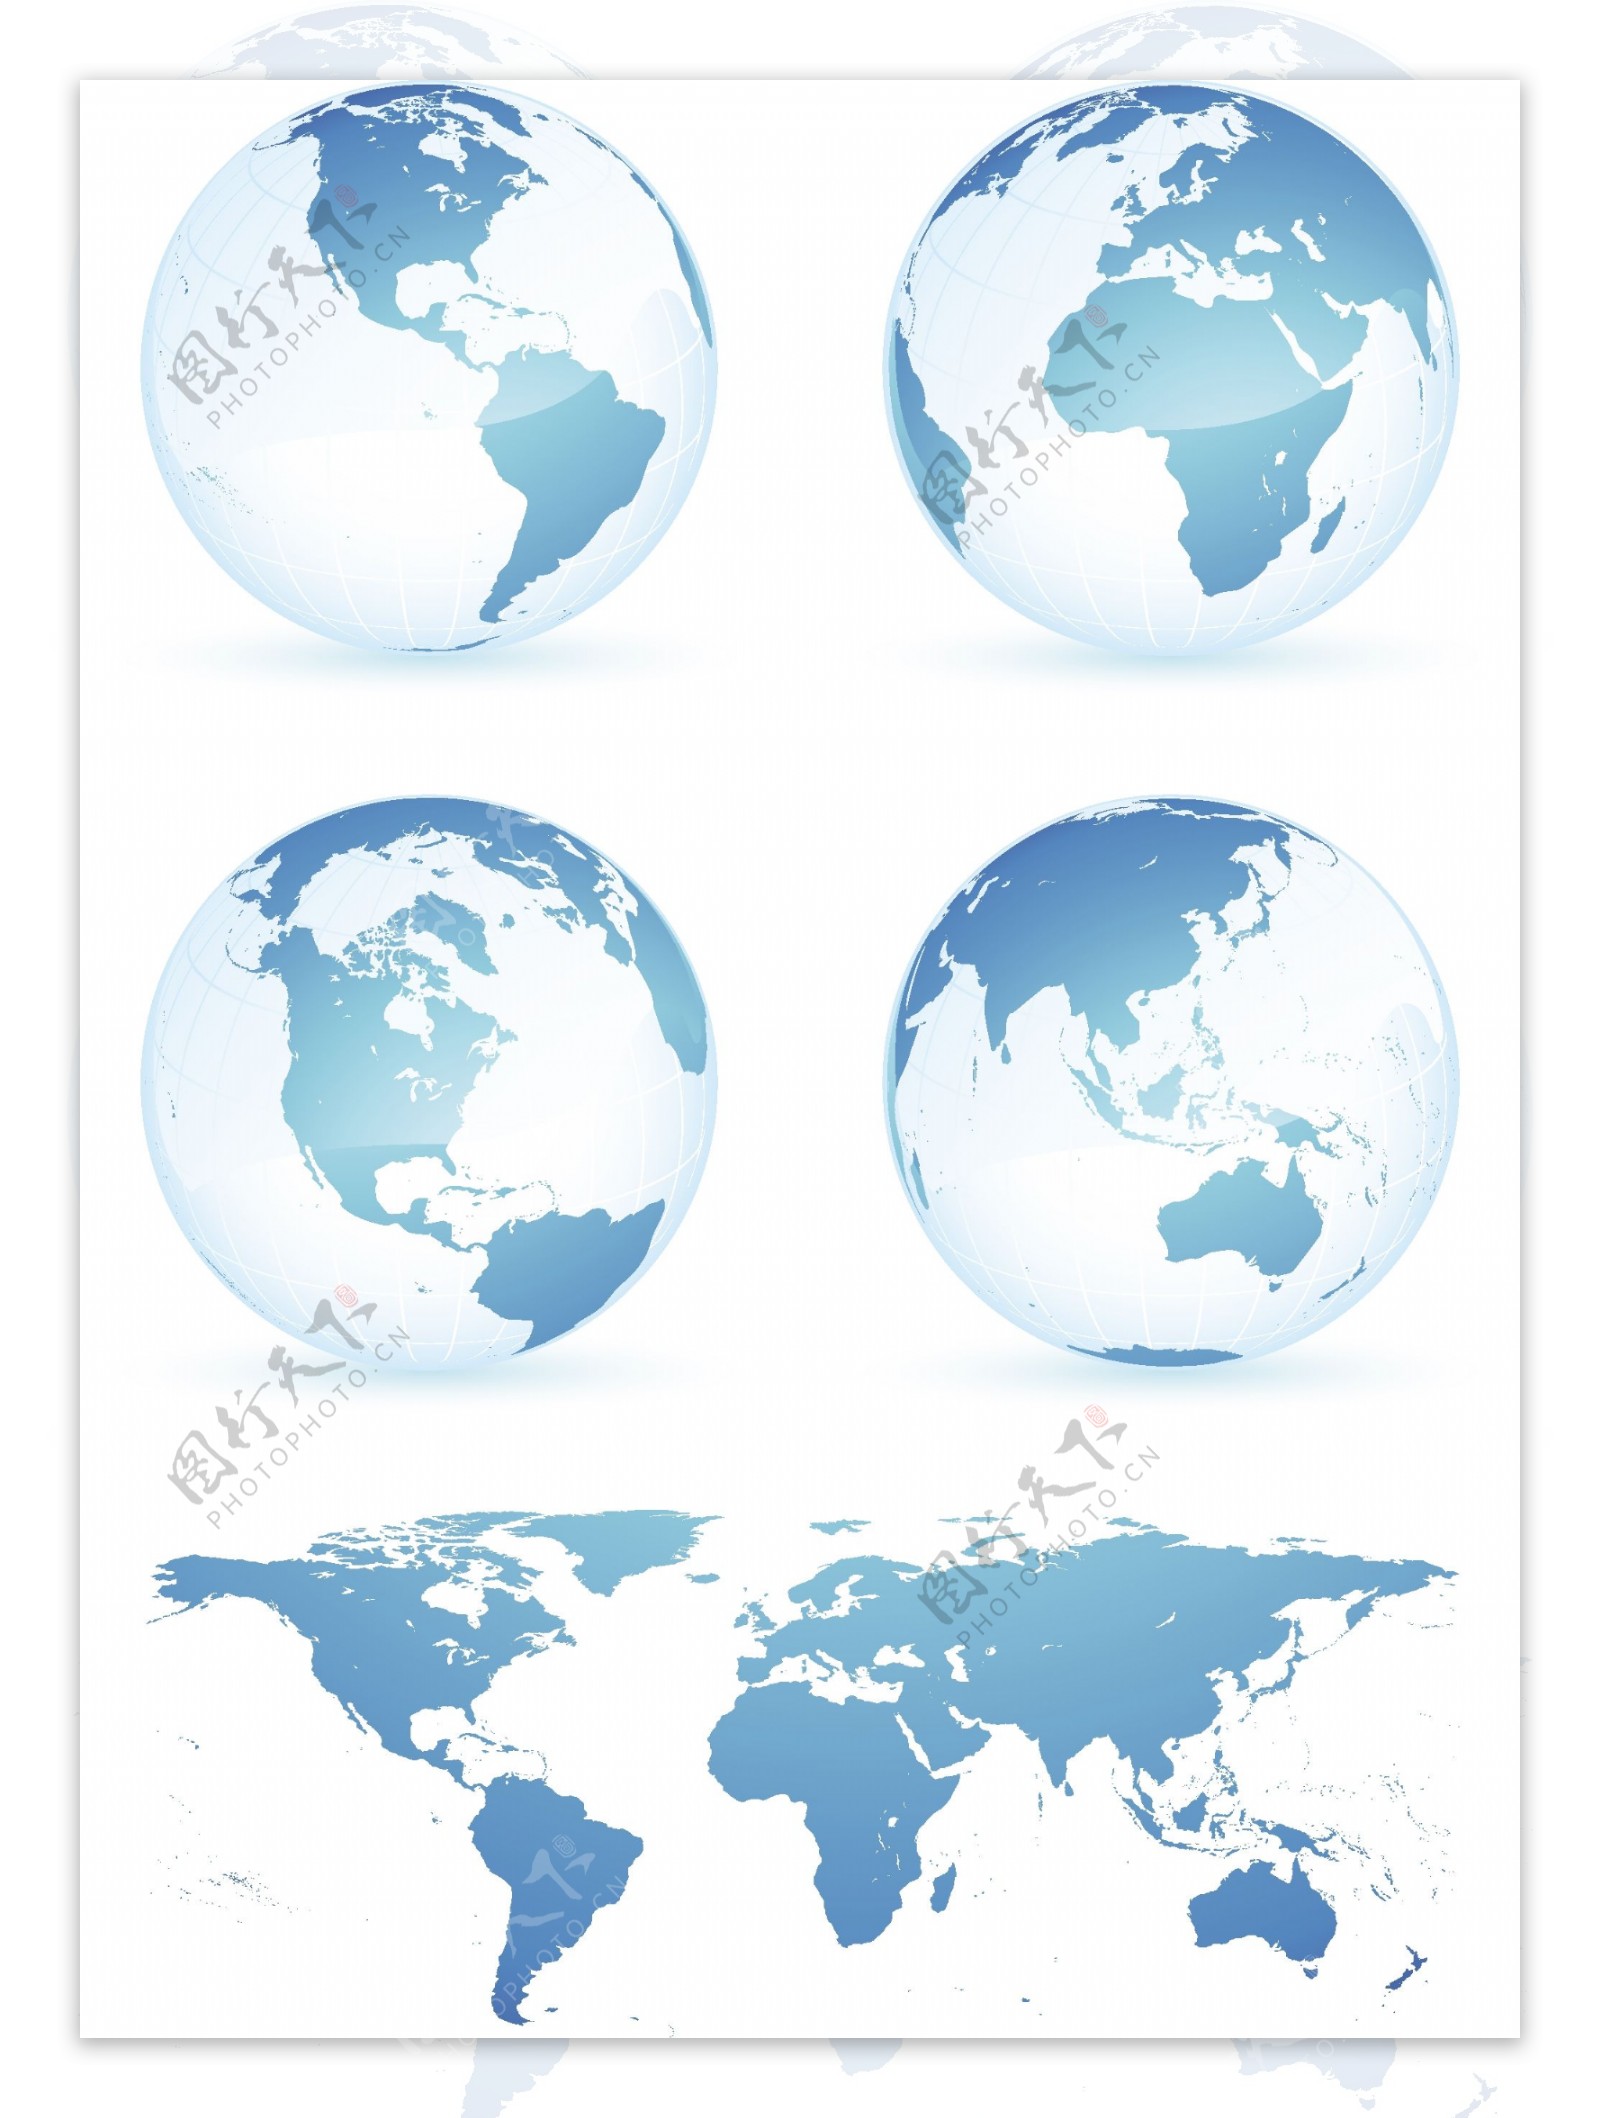 地球和世界地图矢量图下载